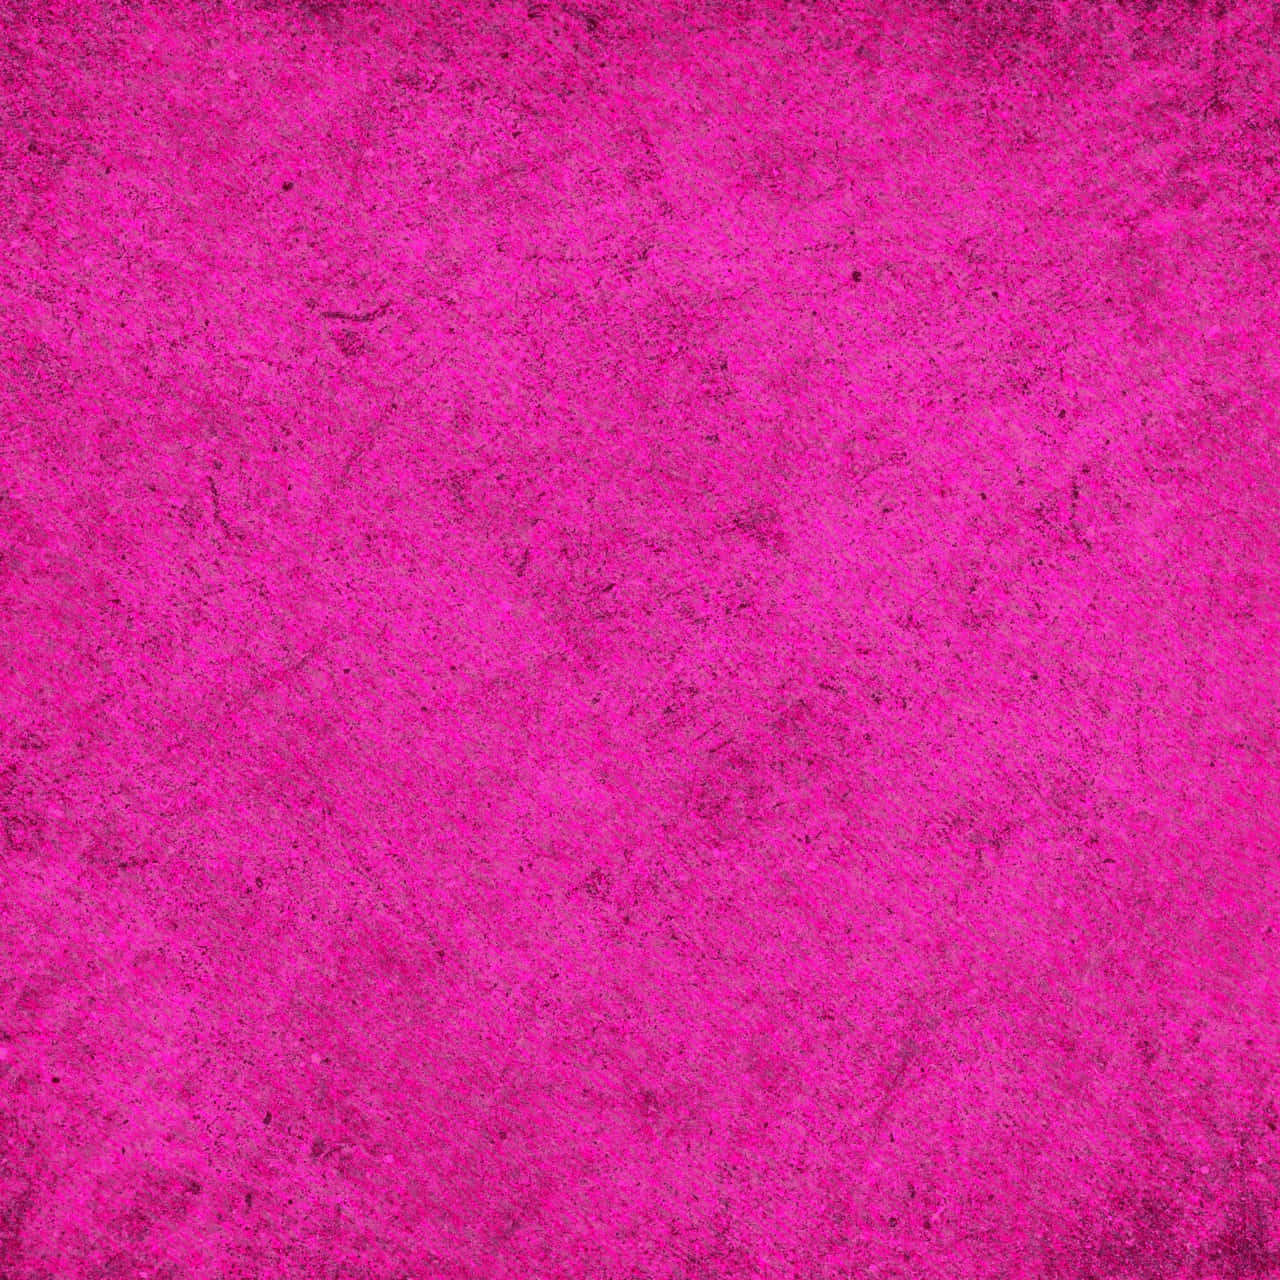 Pink Texture Background Wallpaper Wallpaper